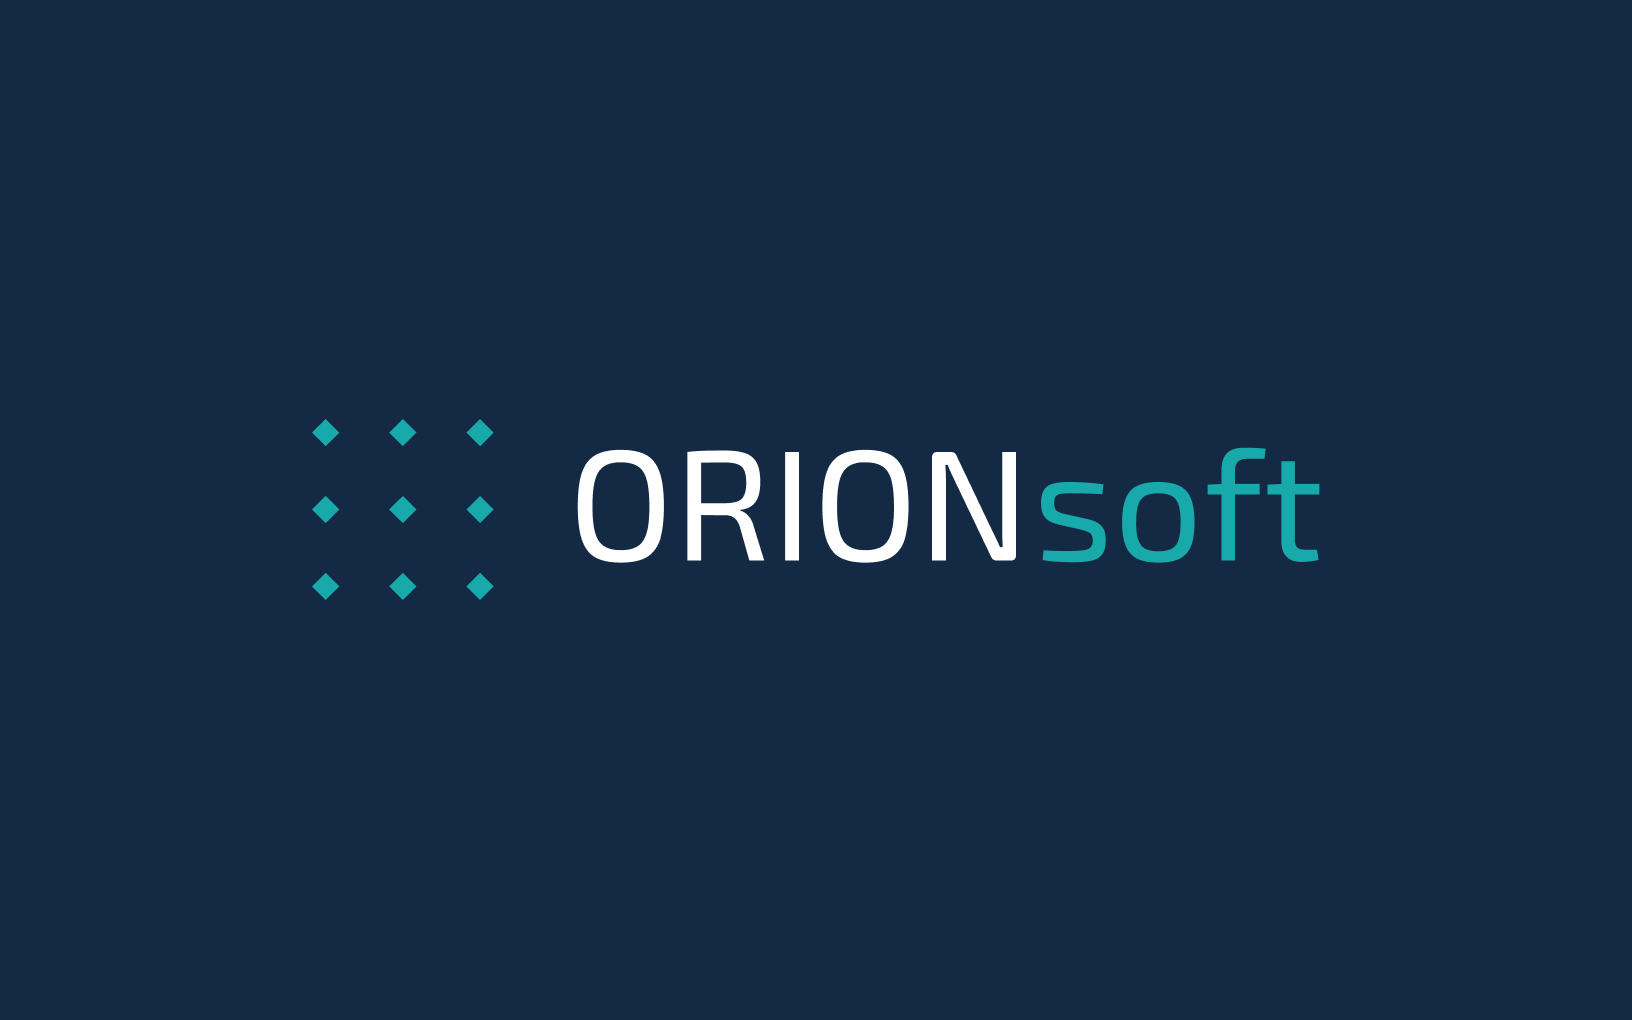 Orion soft - Орион софт - Termit - Инфолэнд Термит - решение для обеспечения удаленного доступа к приложениям и виртуальным рабочим столам